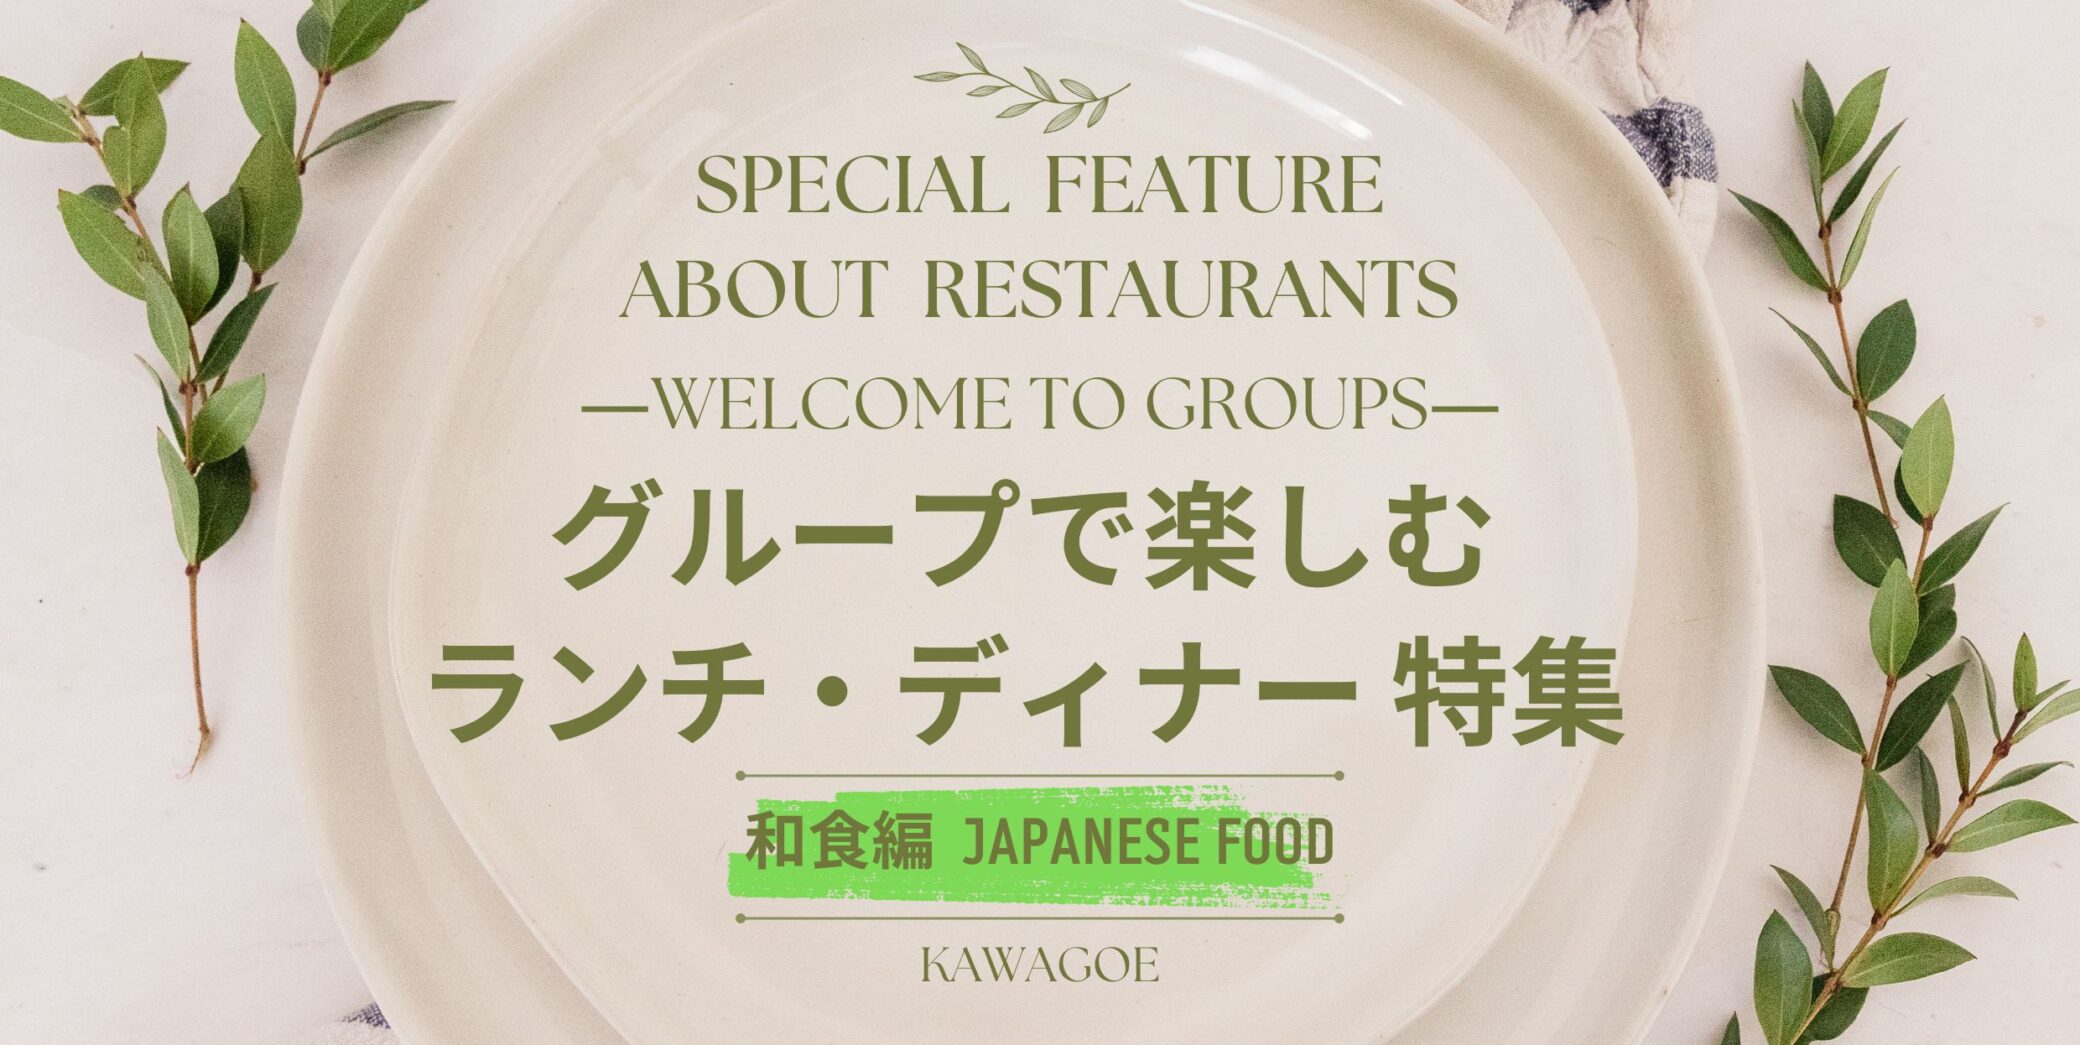 🍴 Spécial déjeuner et dîner pour les groupes - Édition cuisine japonaise - 🎉